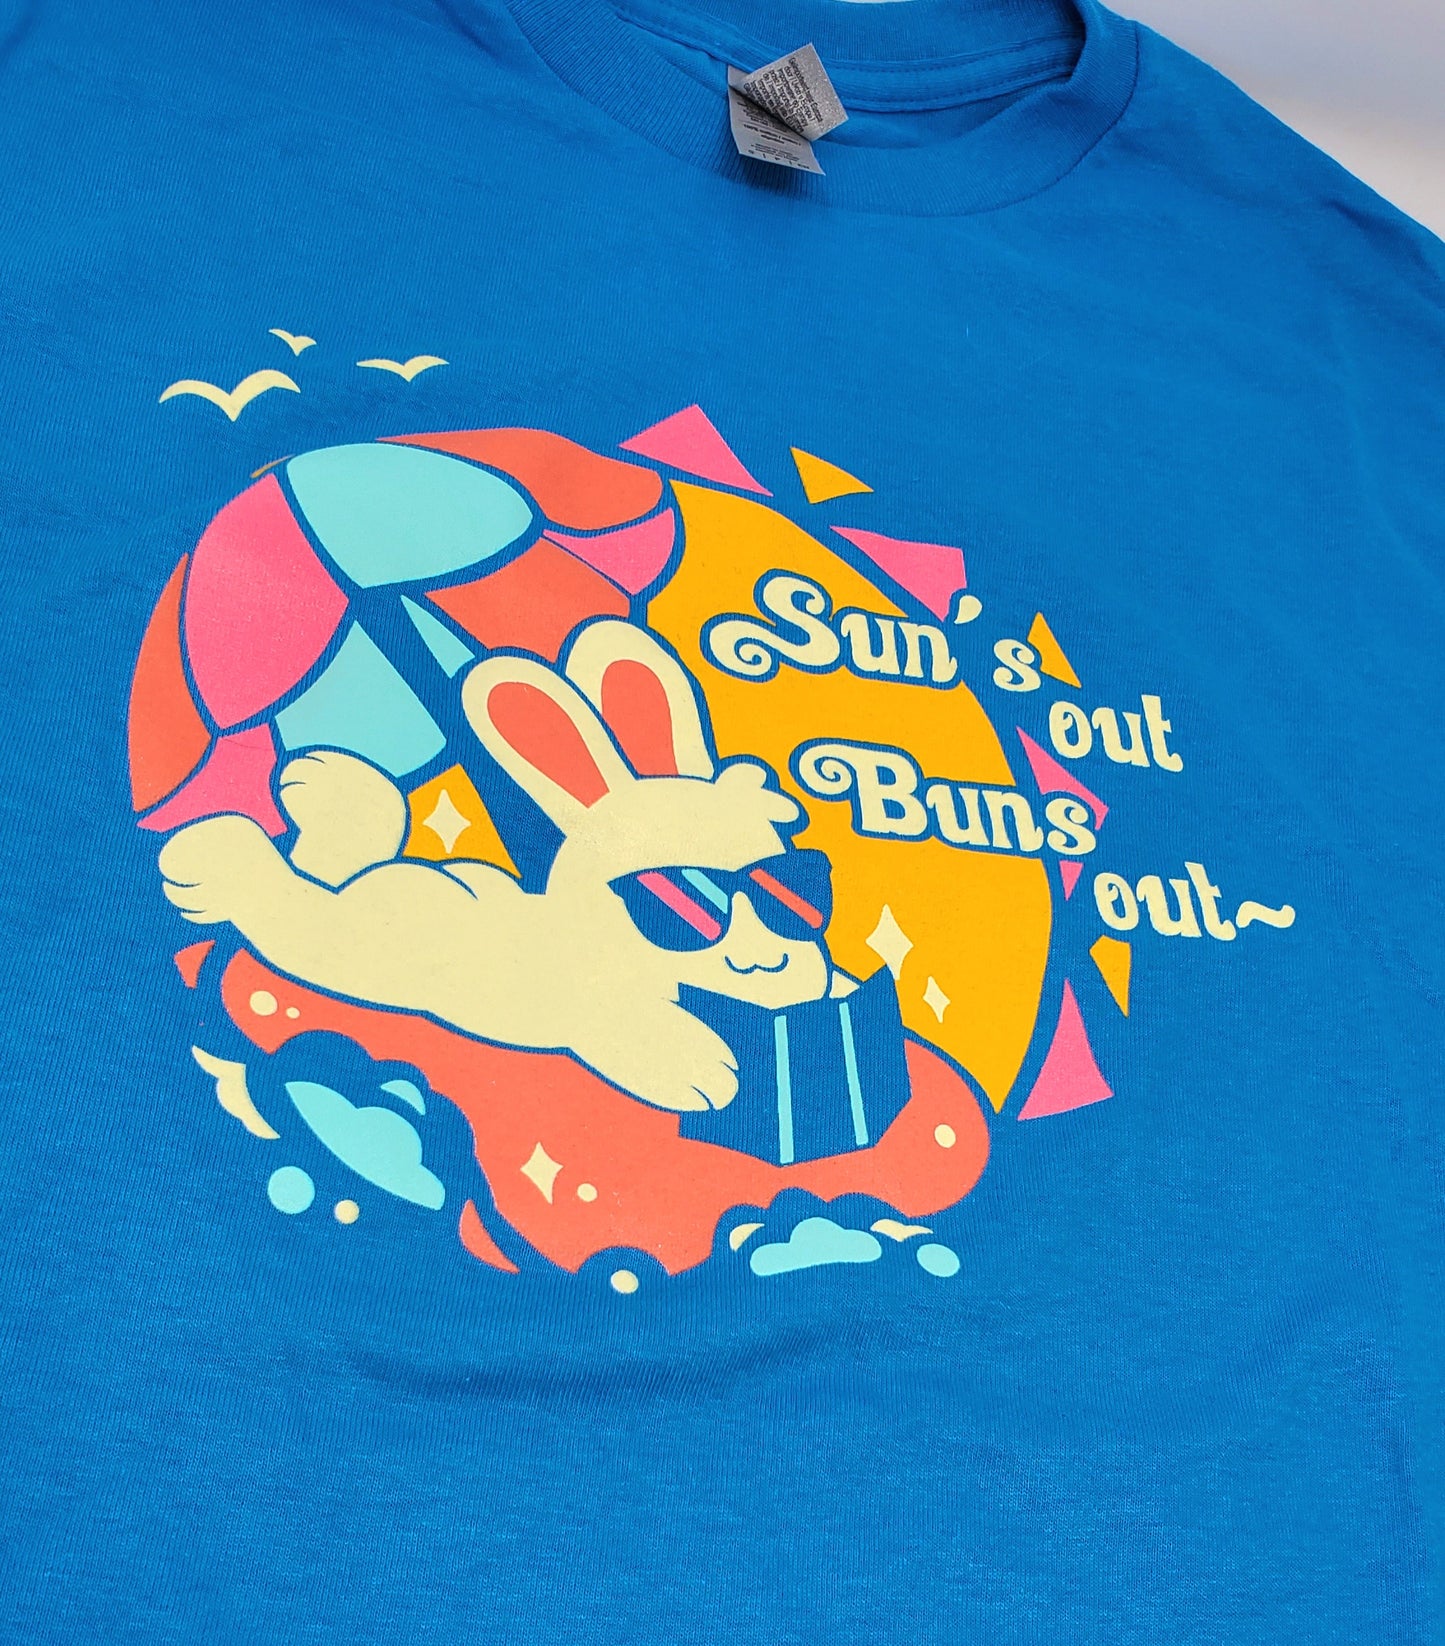 Suns Out Buns Out T-Shirt